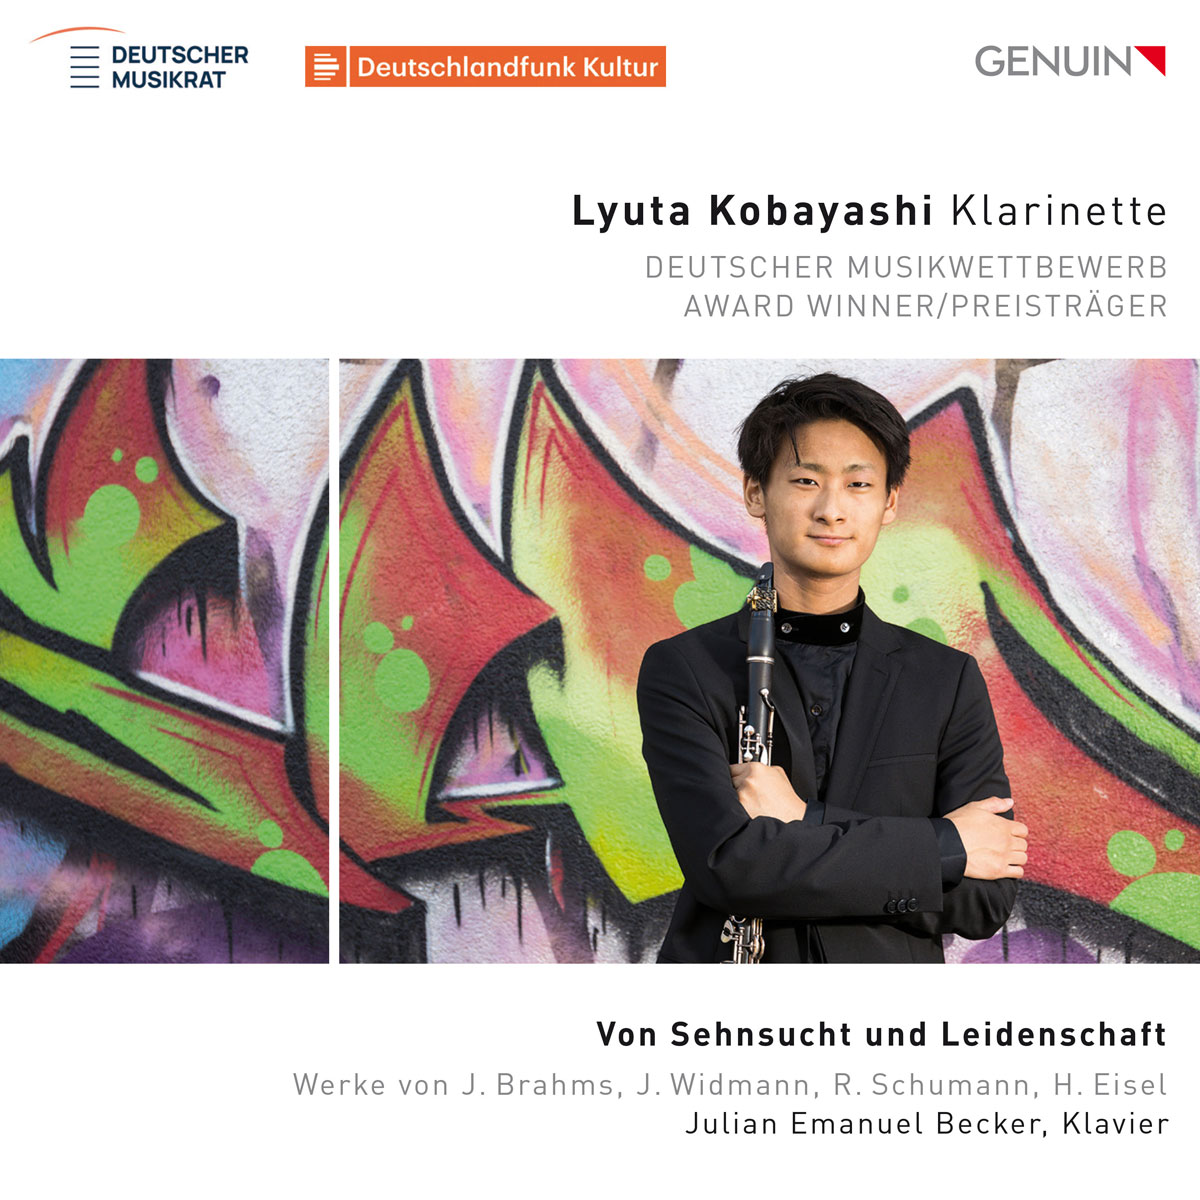 CD album cover 'Von Sehnsucht und Leidenschaft' (GEN 24856) with Lyuta Kobayashi, Julian Emanuel Becker